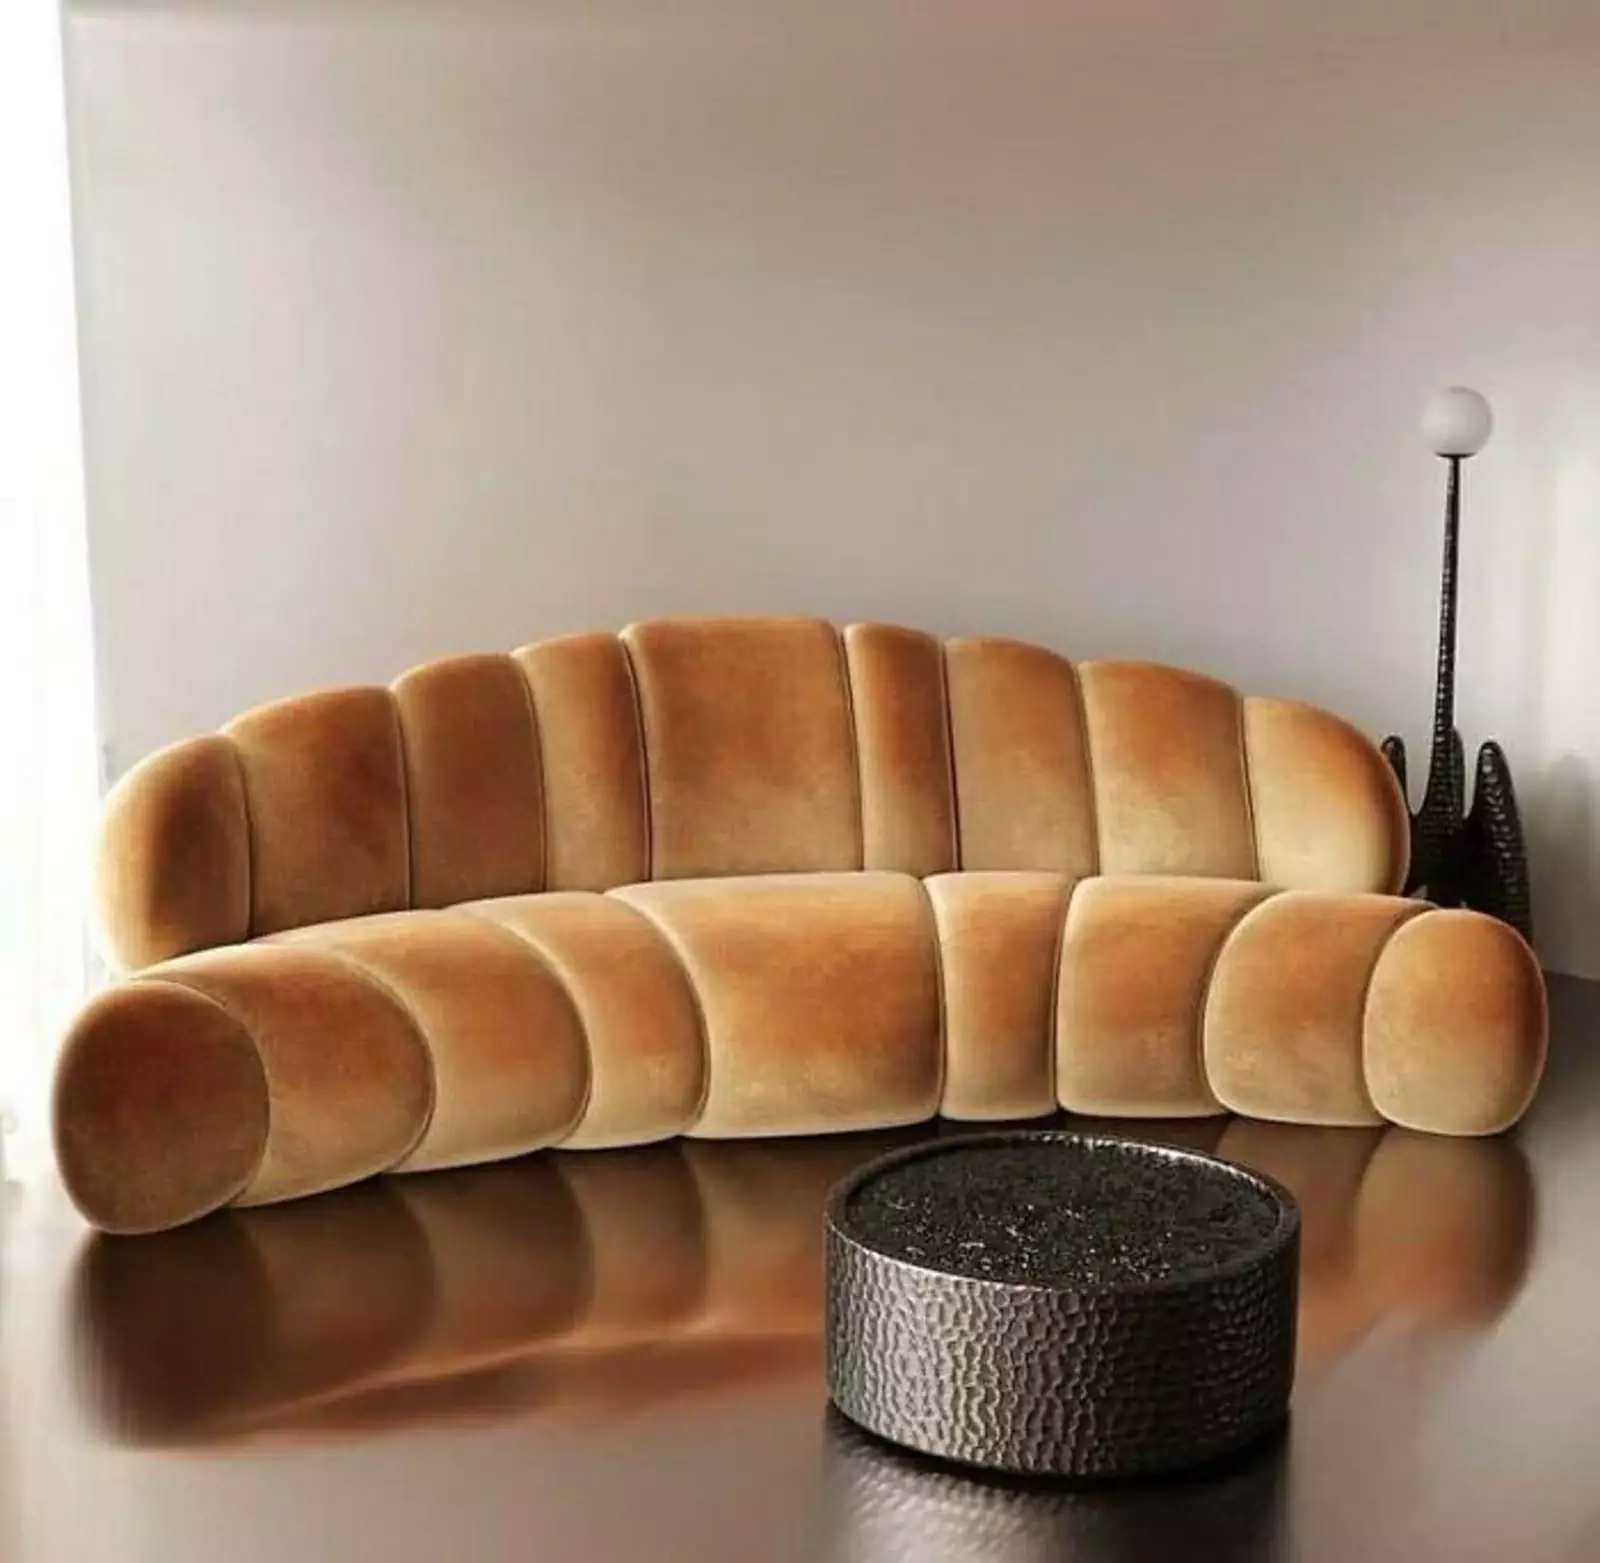 Этому дивану не хватает подушек, похожих на сливочное масло или джем.